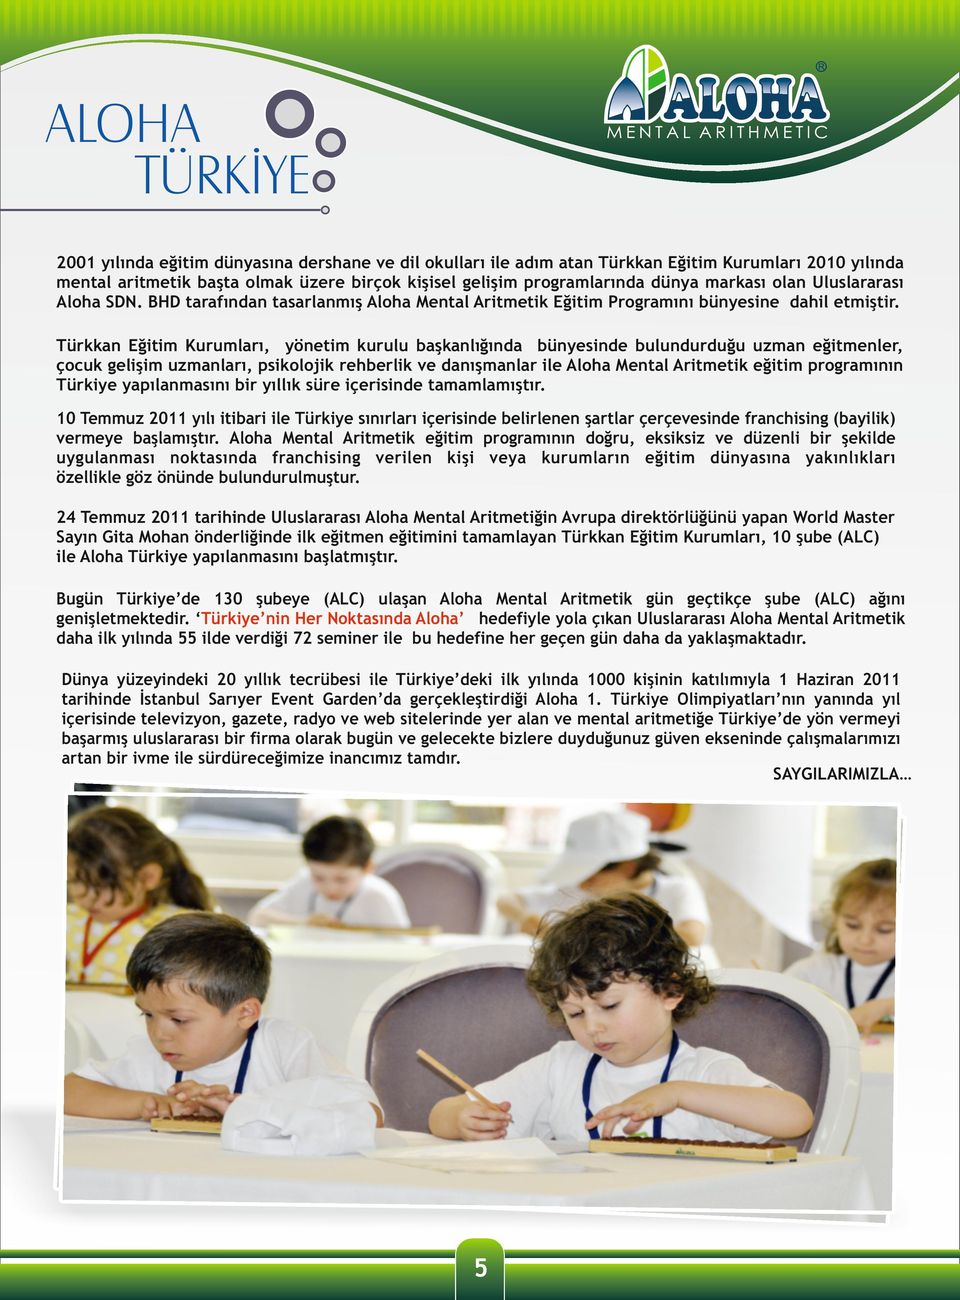 Türkkan Eğitim Kurumları, yönetim kurulu başkanlığında bünyesinde bulundurduğu uzman eğitmenler, çocuk gelişim uzmanları, psikolojik rehberlik ve danışmanlar ile Aloha Mental Aritmetik eğitim